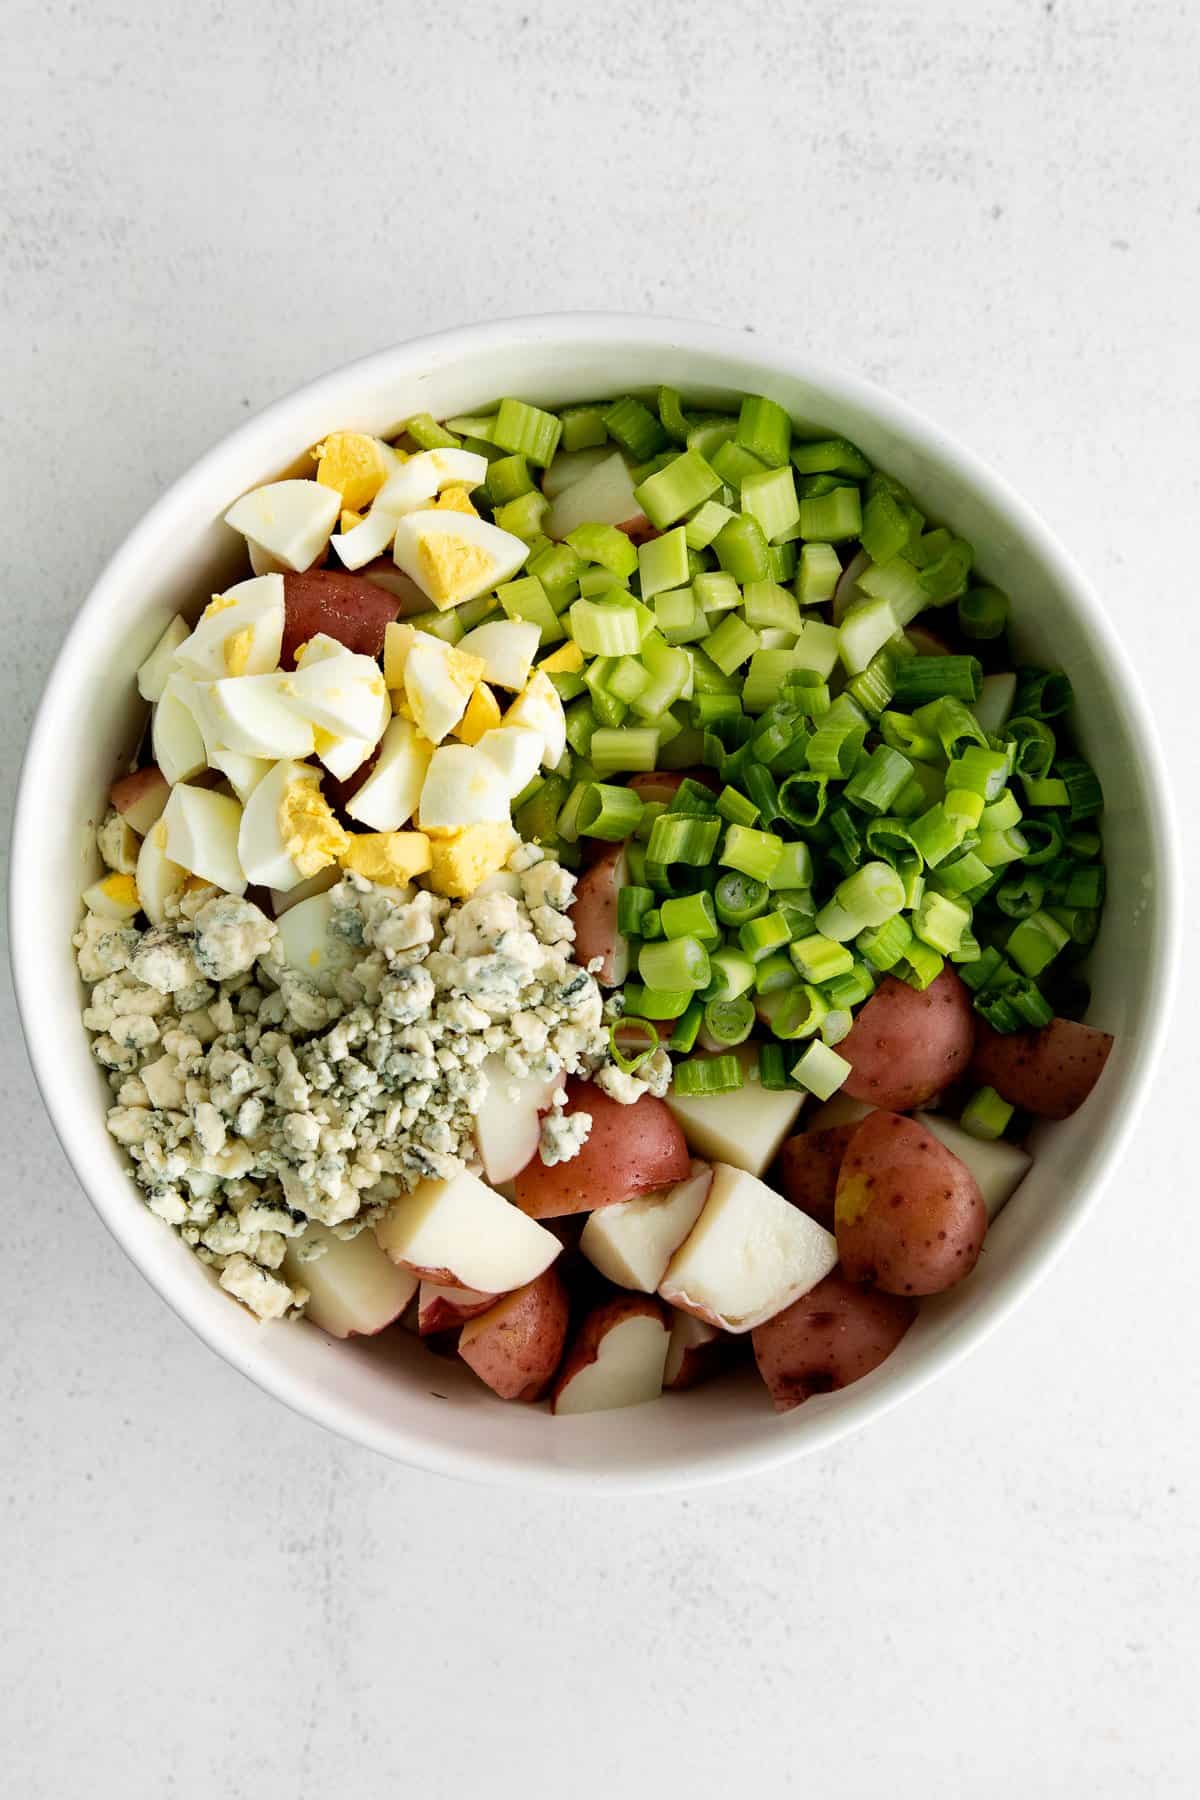 potato salad ingredients in bowl.